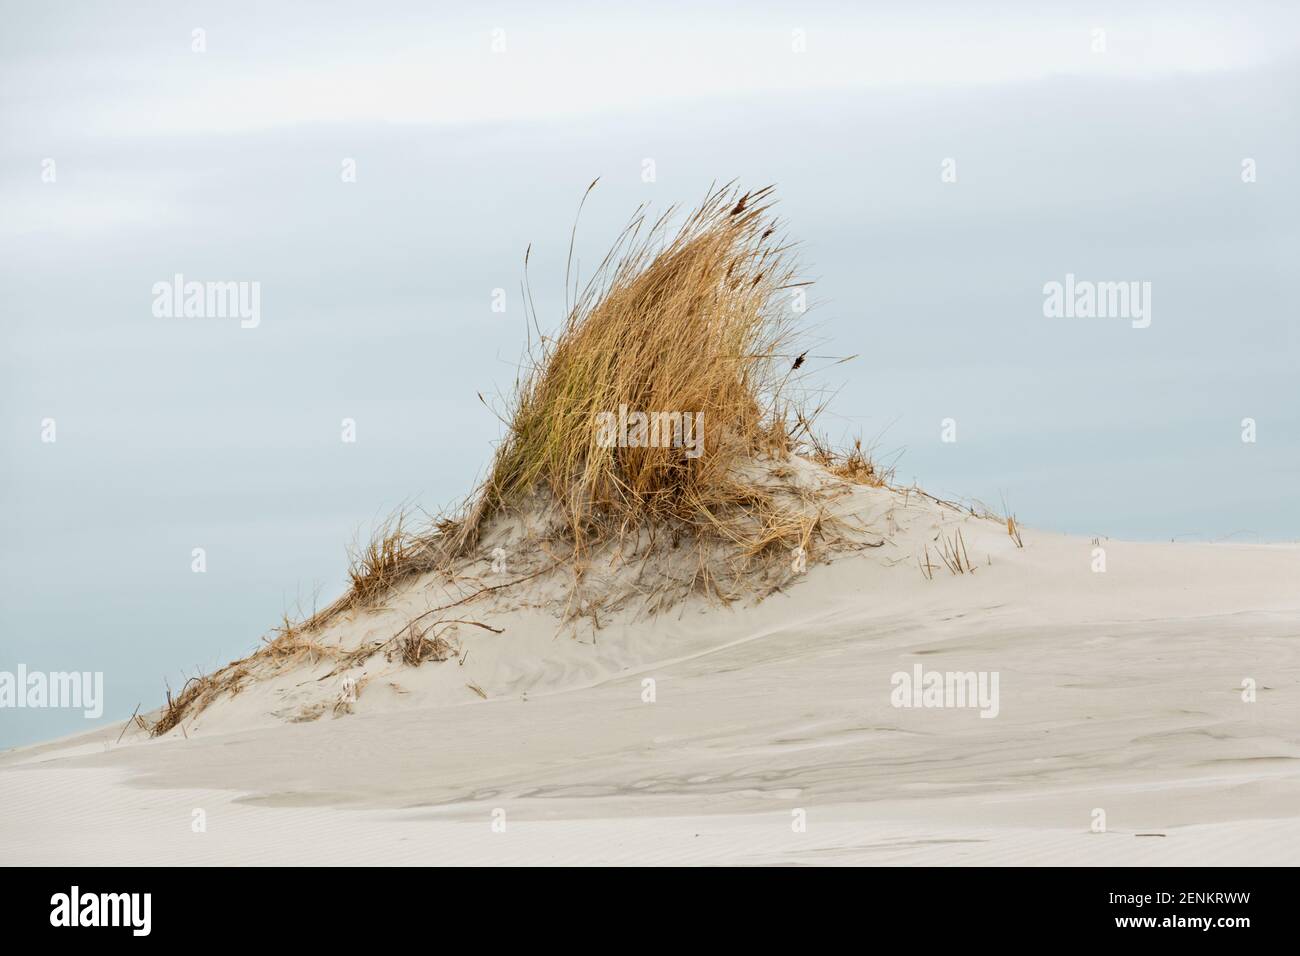 Dünenbildung: Kleine Düne mit Marram Gras an einem windigen Strand unter einem grau-blauen und bewölkten Himmel gewachsen Stockfoto